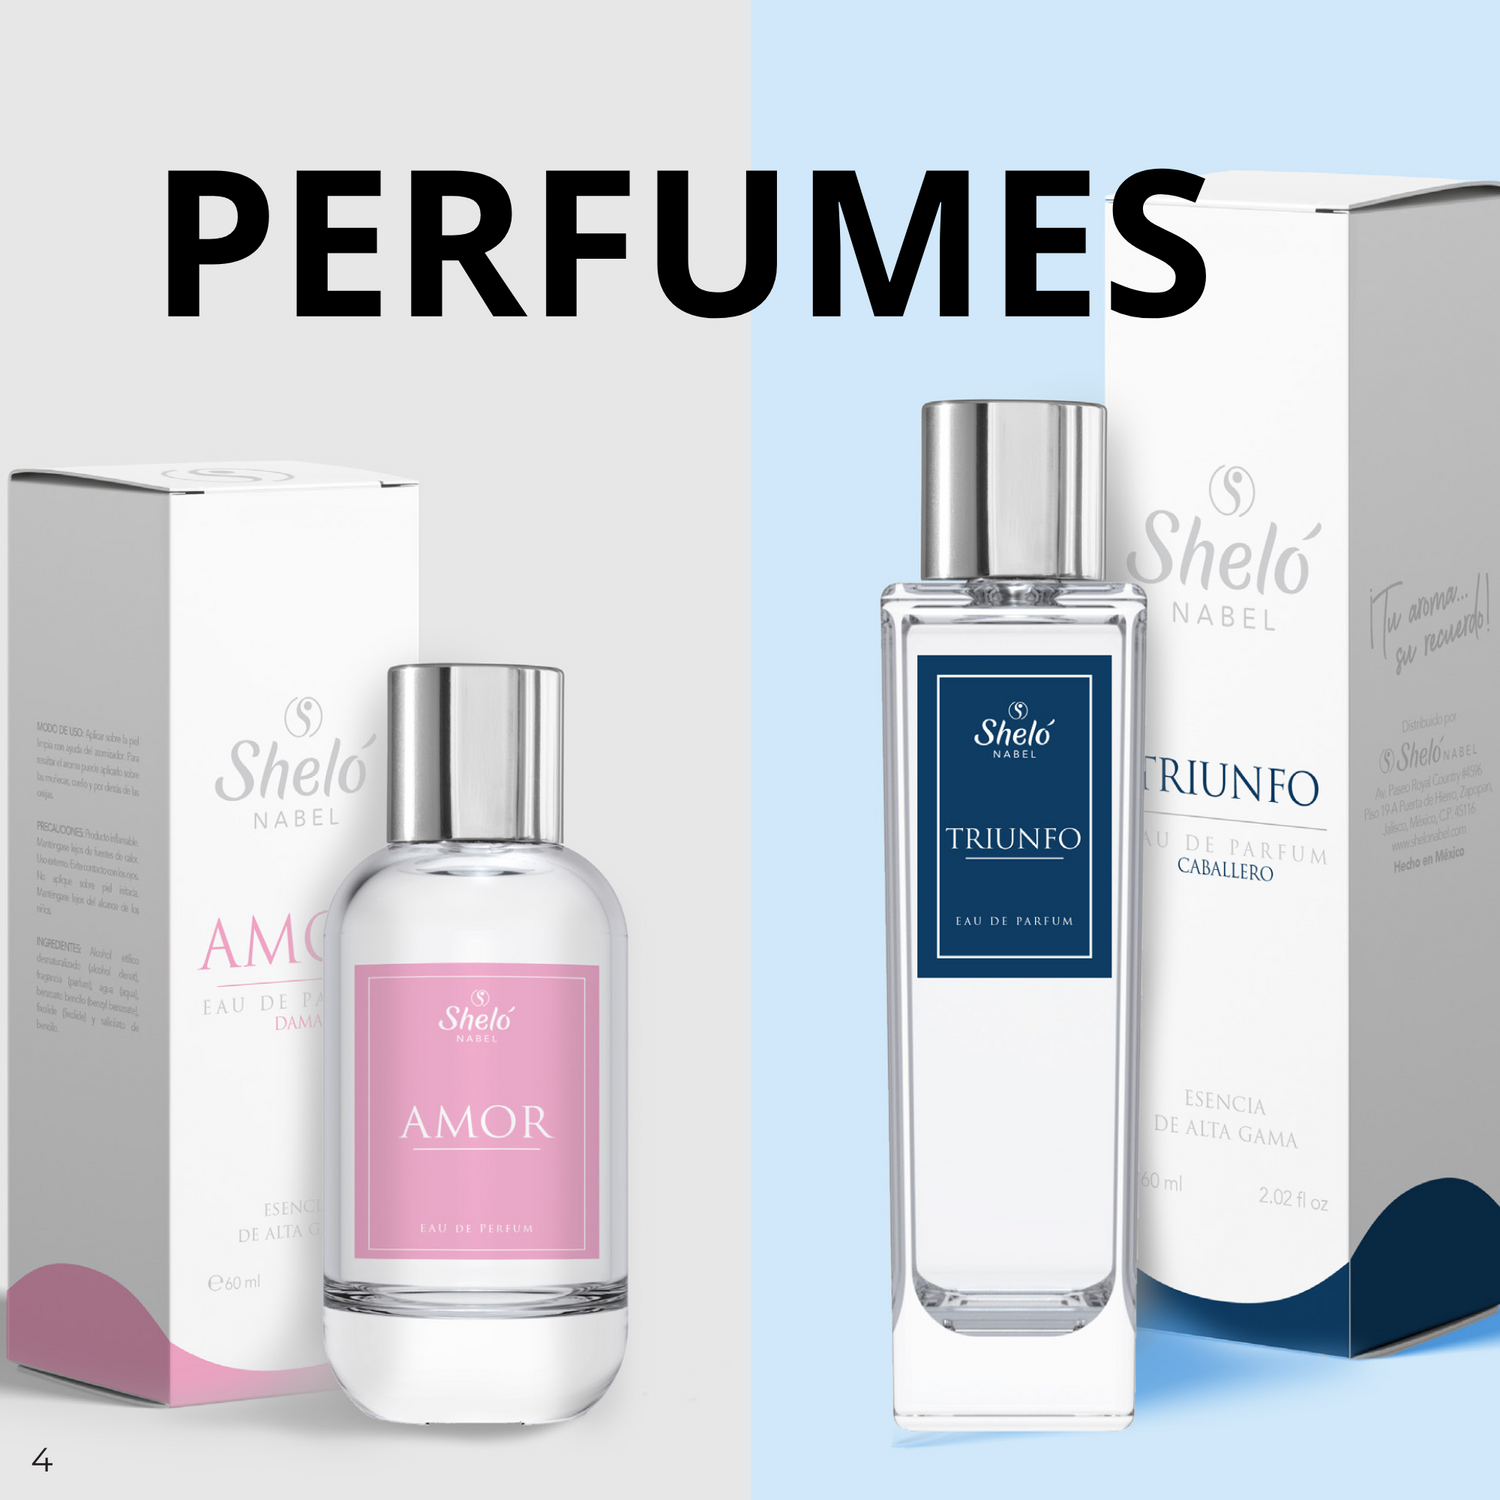 Perfume / ESENCIA CORPORAL  DE ALTA GAMA